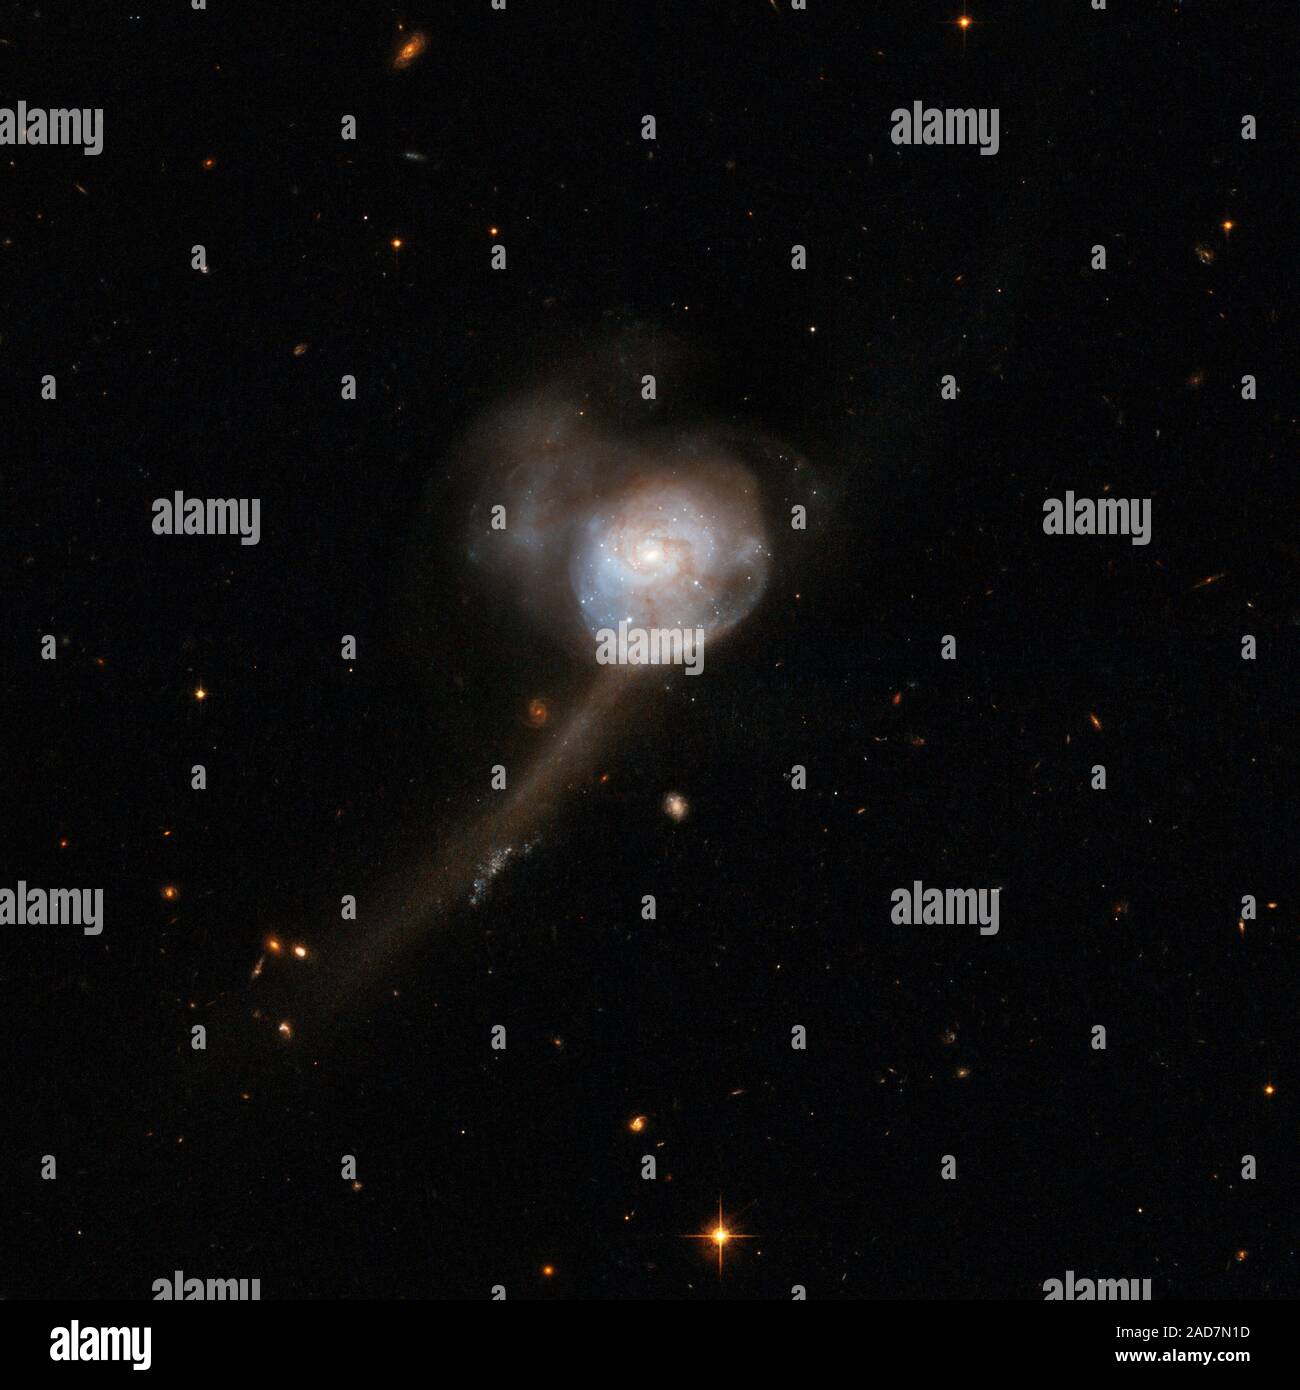 Dieser Galaxie verfügt über einen einzelnen Kern, mit einem blauen zentralen Festplatte mit zarten feine Struktur in der äußeren Teile, und Tidal tails Indikative von zwei ehemaligen Scheibengalaxien. Heute sind diese Galaxien erscheinen ihre Fusion abgeschlossen zu haben. Der überrest zeigt deutliche Anzeichen, dass die Fusion wurde Gas-reichen und begleitet von einem Starburst. NGC 17 Gas-reichen und kann seine starken zentralen Starburst und Milde zentrale Aktivität sustain für einige Zeit zu kommen. NGC 17 ist etwa 250 Millionen Lichtjahre entfernt im Sternbild Walfisch, der Wal. Dieses Bild ist Teil einer großen Sammlung von 59 imag Stockfoto